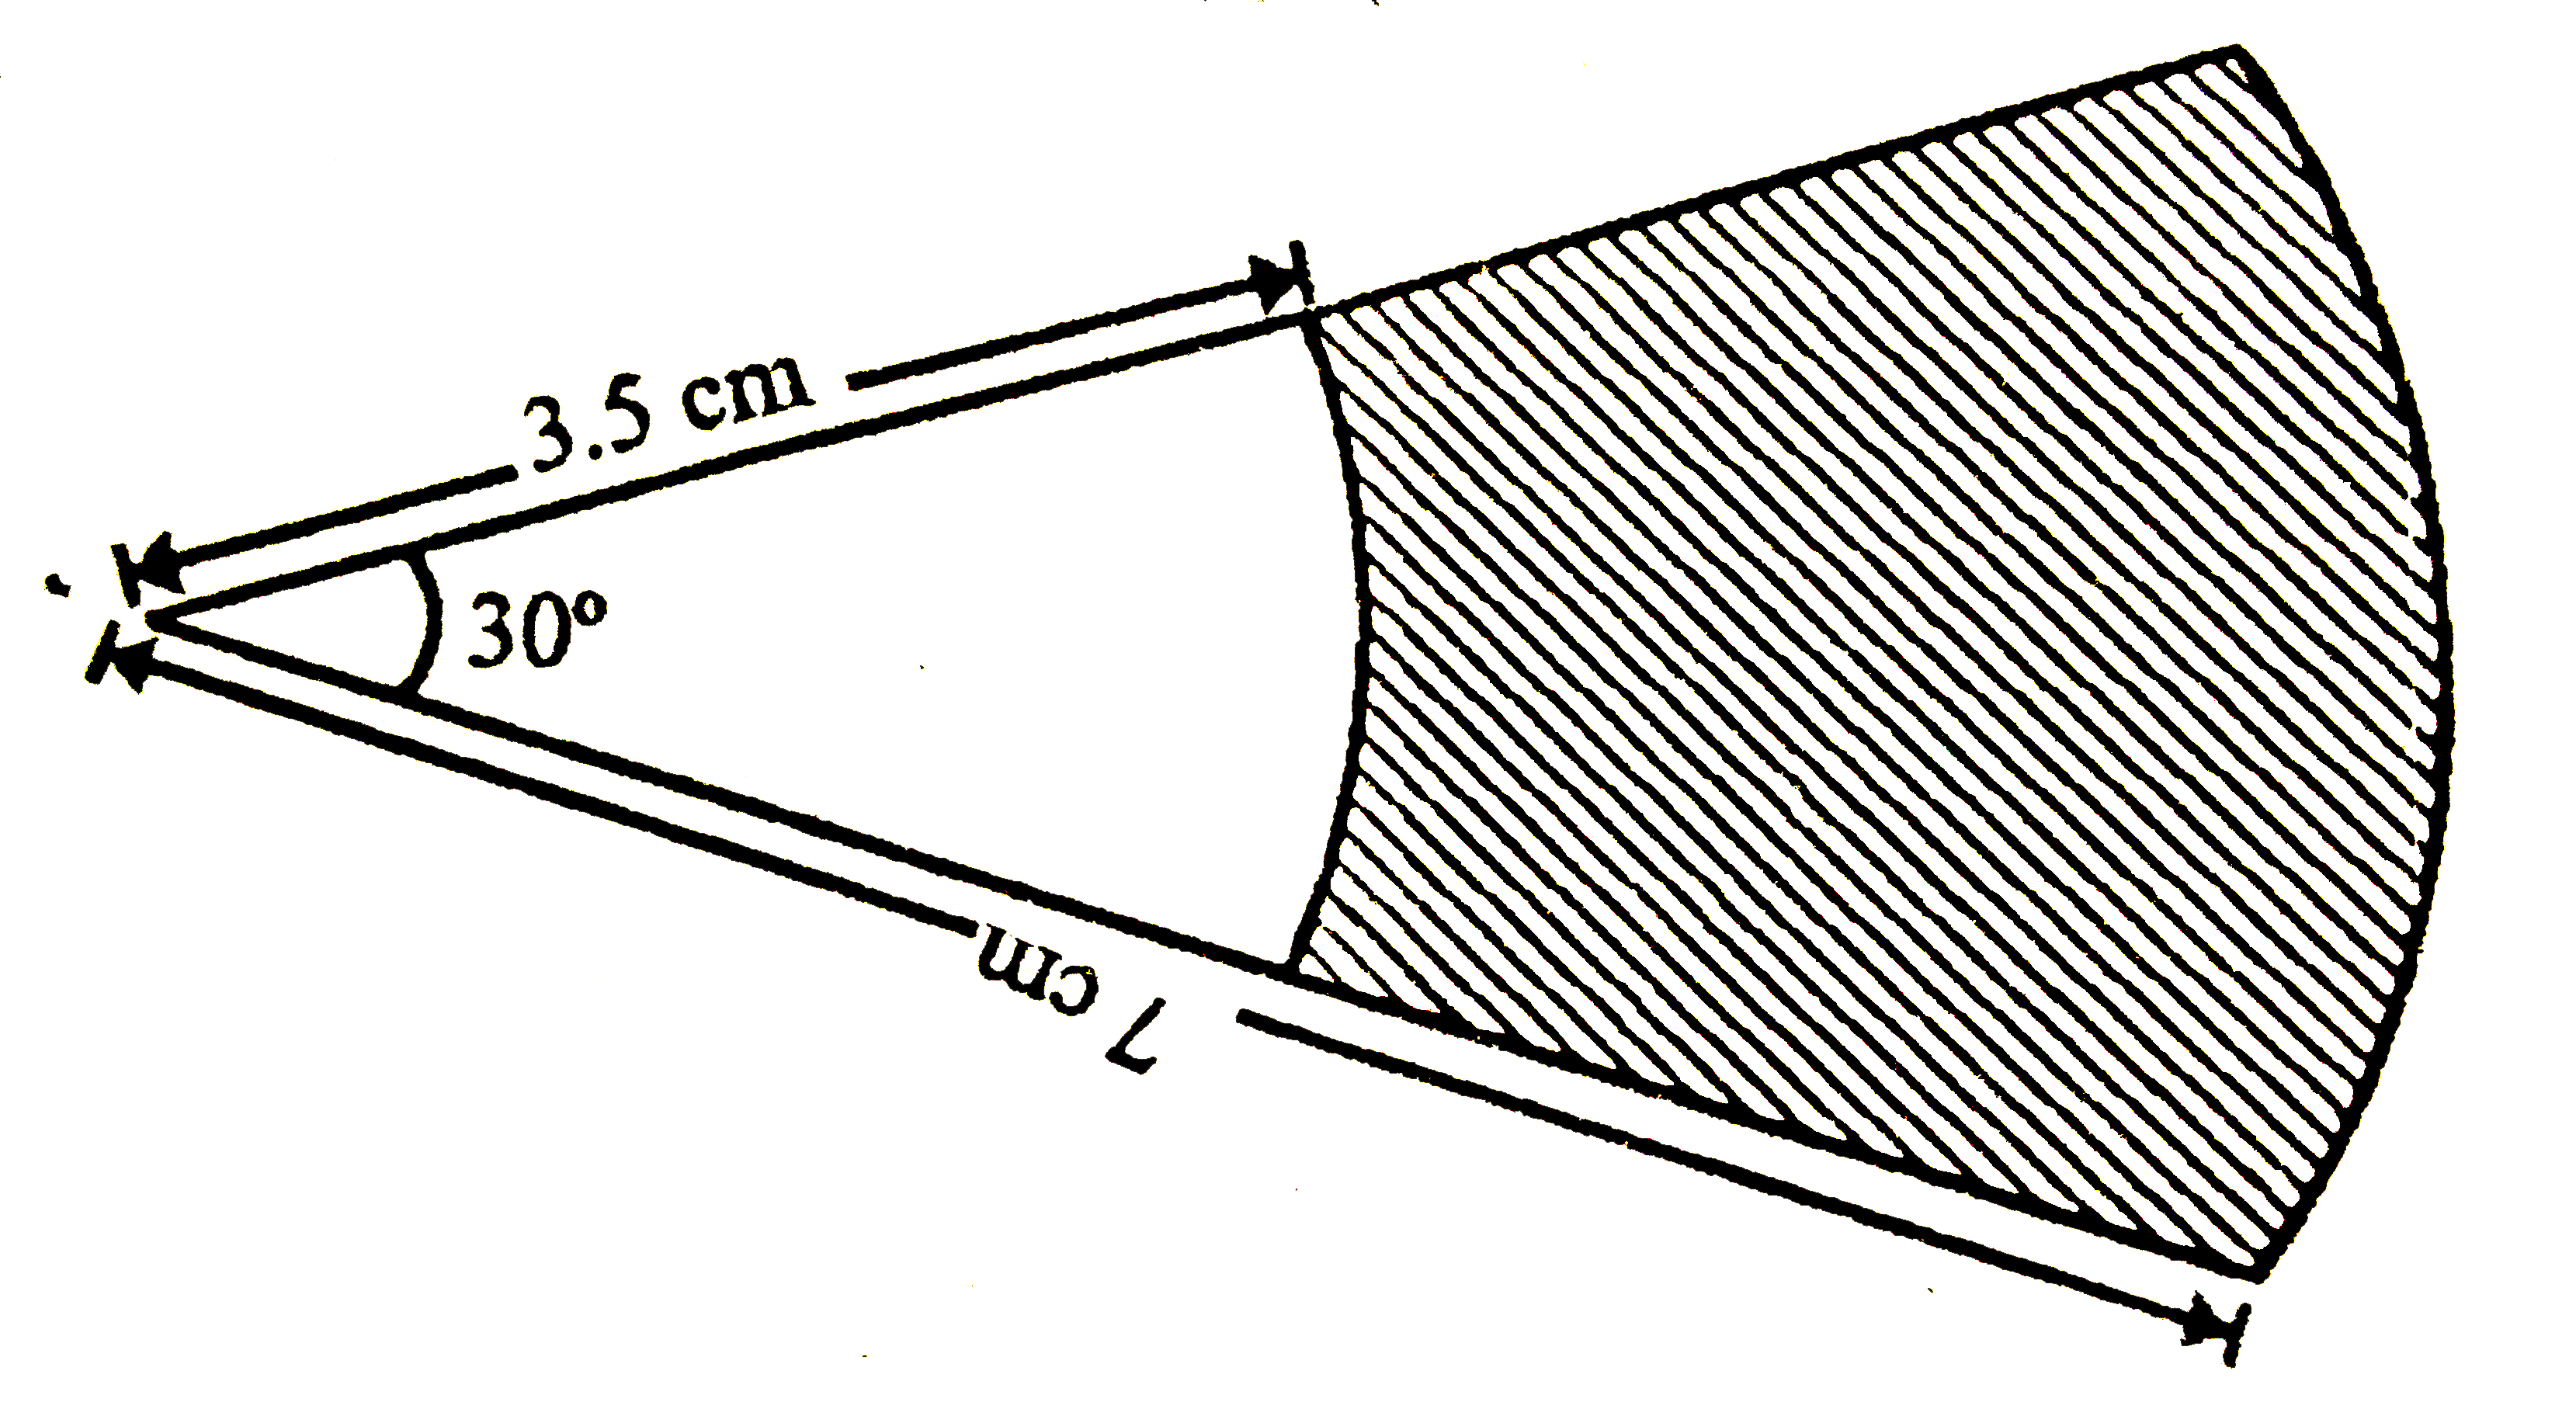 दिए  गए  चित्र  में  दो संकेन्द्रीय वृत्तों, जिनकी त्रिज्याएँ 7 cm और  3.5  cm  है, के  त्रिजयखंड दिखाए  गए है| छायांकित  भाग  का  क्षेत्रफल  ज्ञात  करे ।